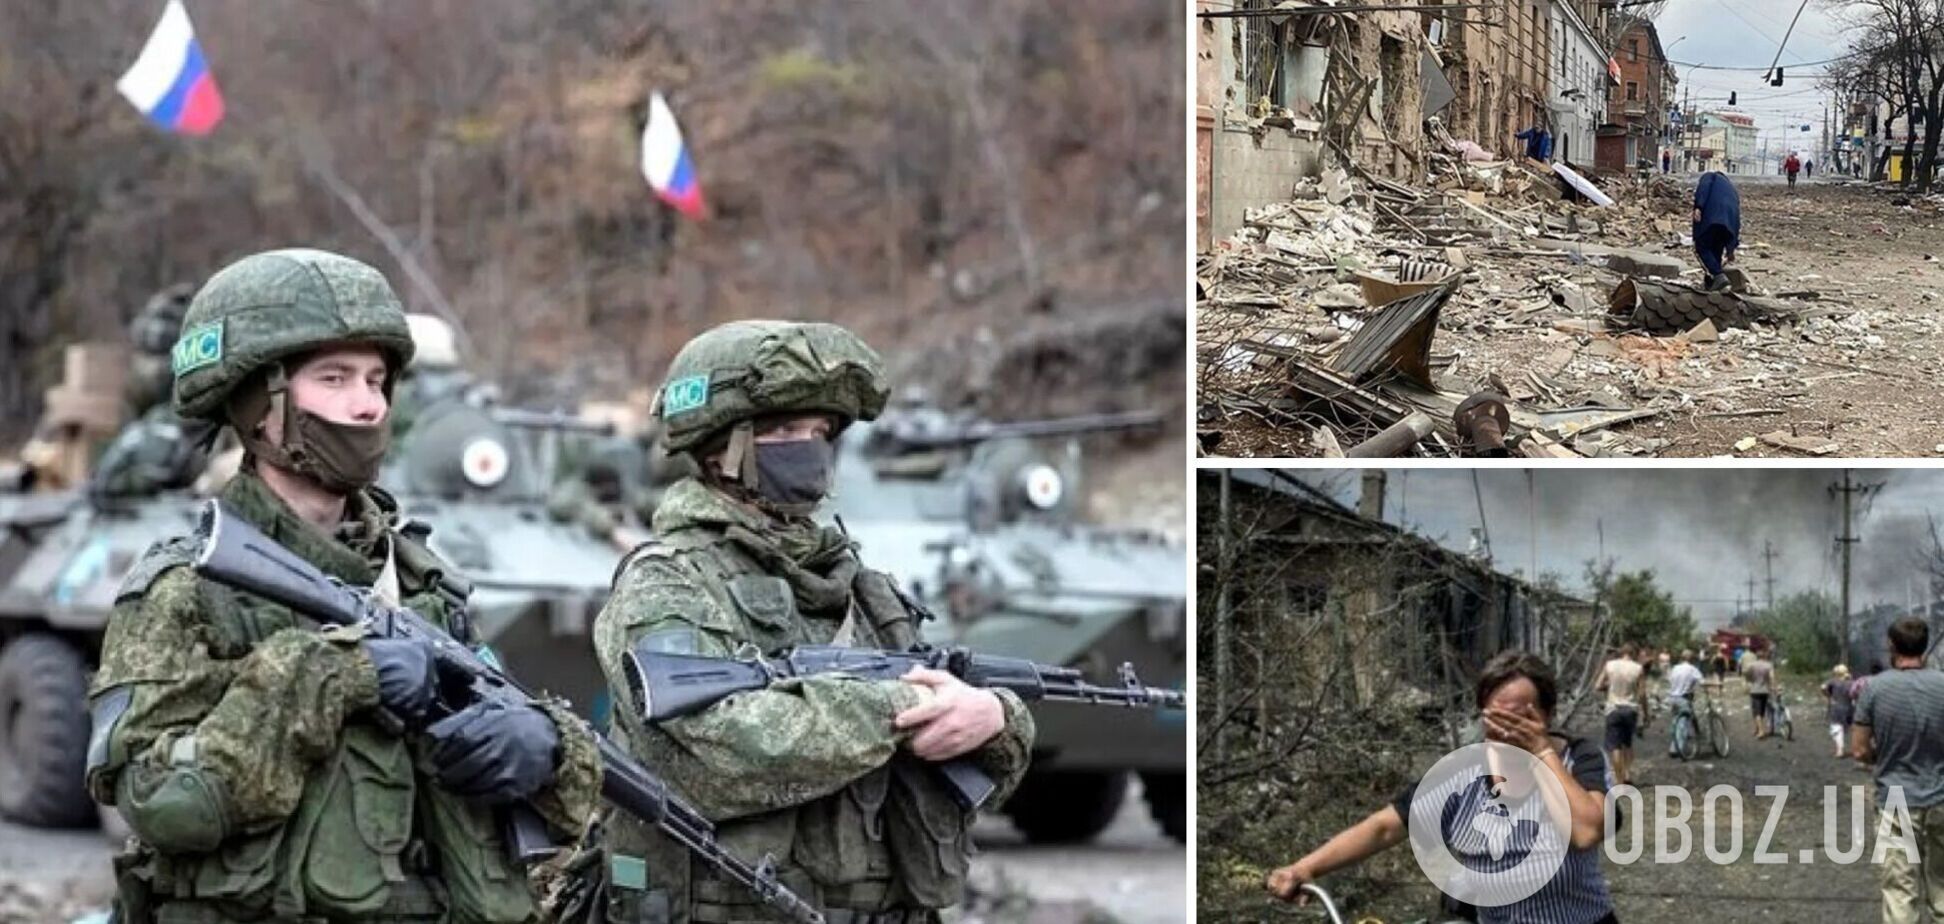 Сопротивление украинцев срывает планы Кремля по аннексии территорий, но РФ готовит атаки 'под чужим флагом' – ISW